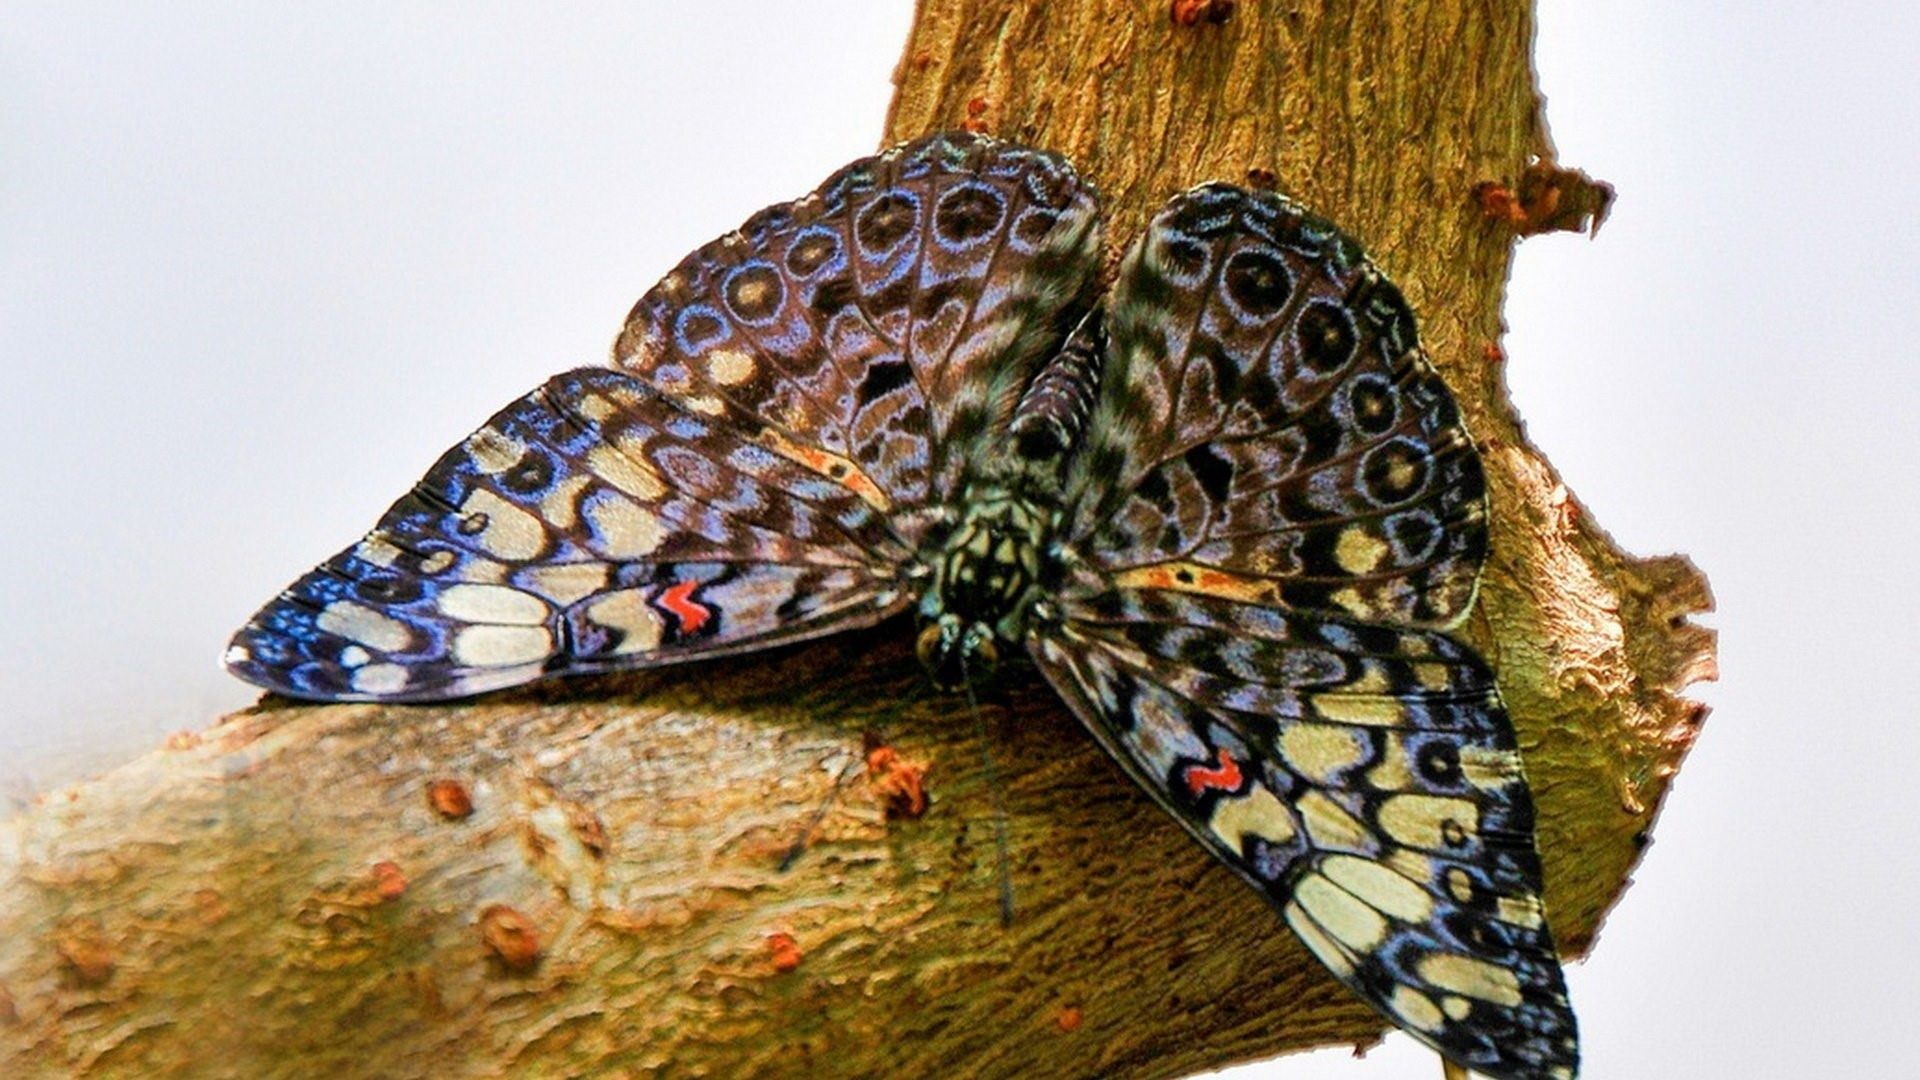 фотографии редких бабочек